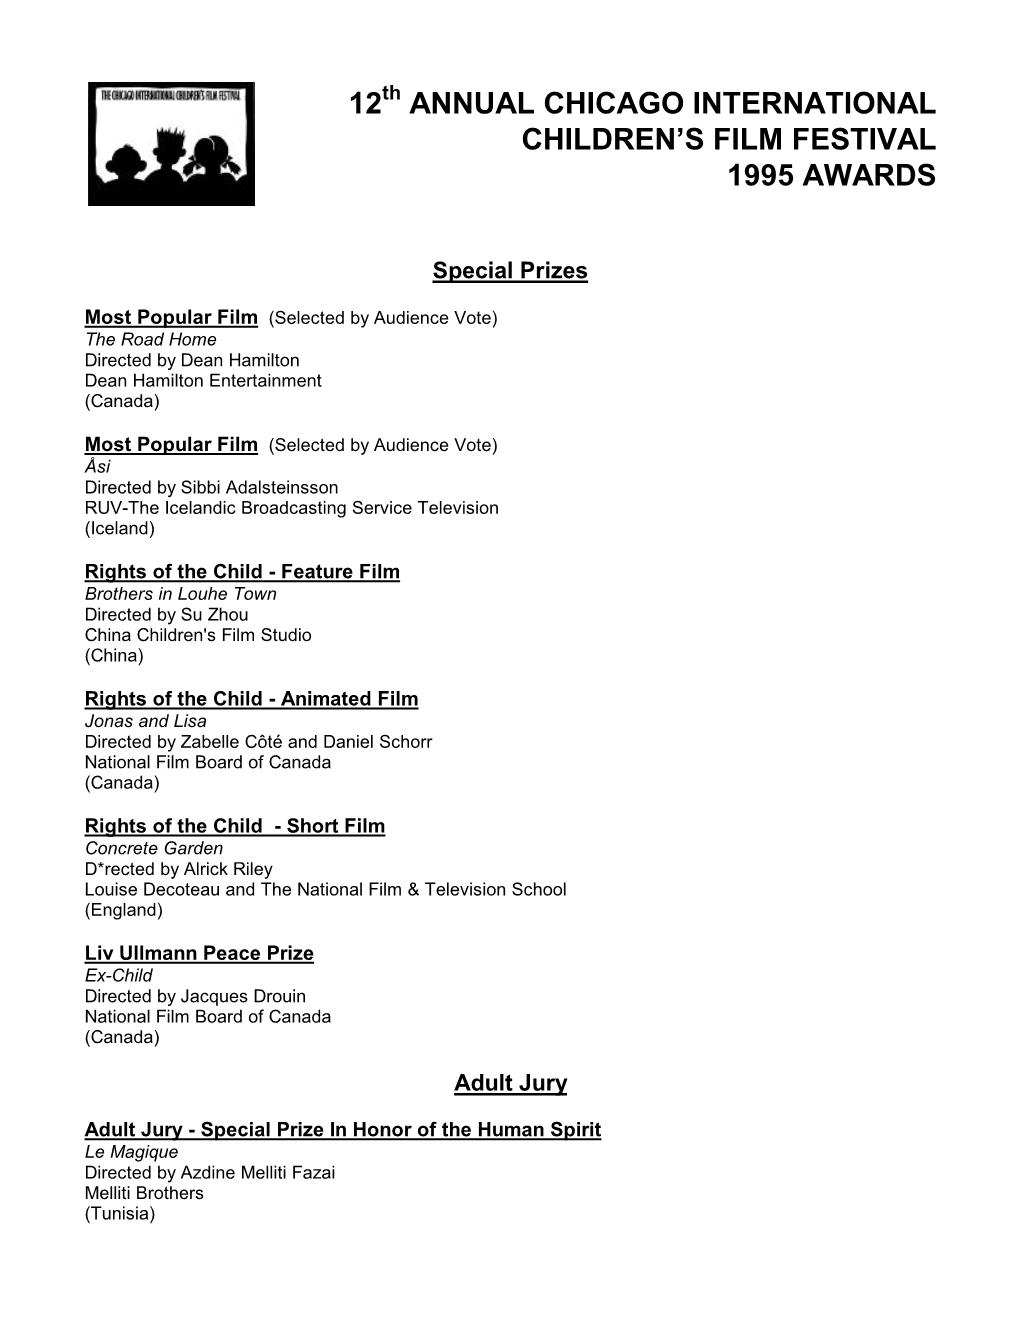 Award List 1995